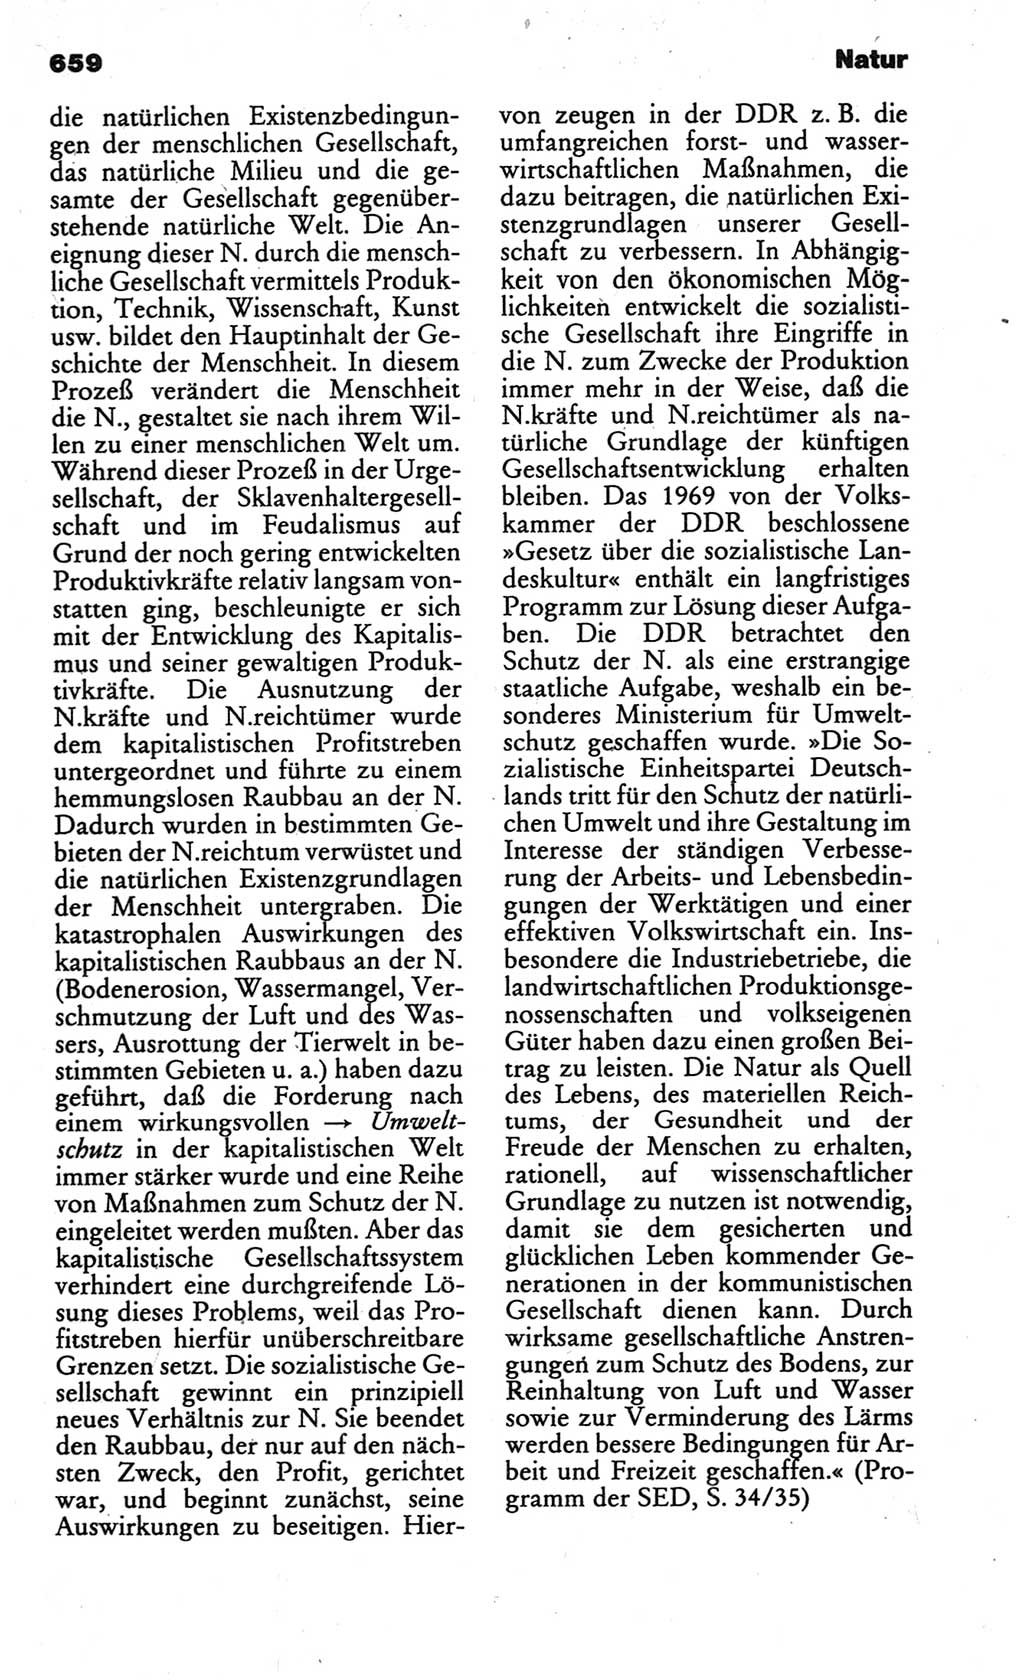 Kleines politisches Wörterbuch [Deutsche Demokratische Republik (DDR)] 1986, Seite 659 (Kl. pol. Wb. DDR 1986, S. 659)